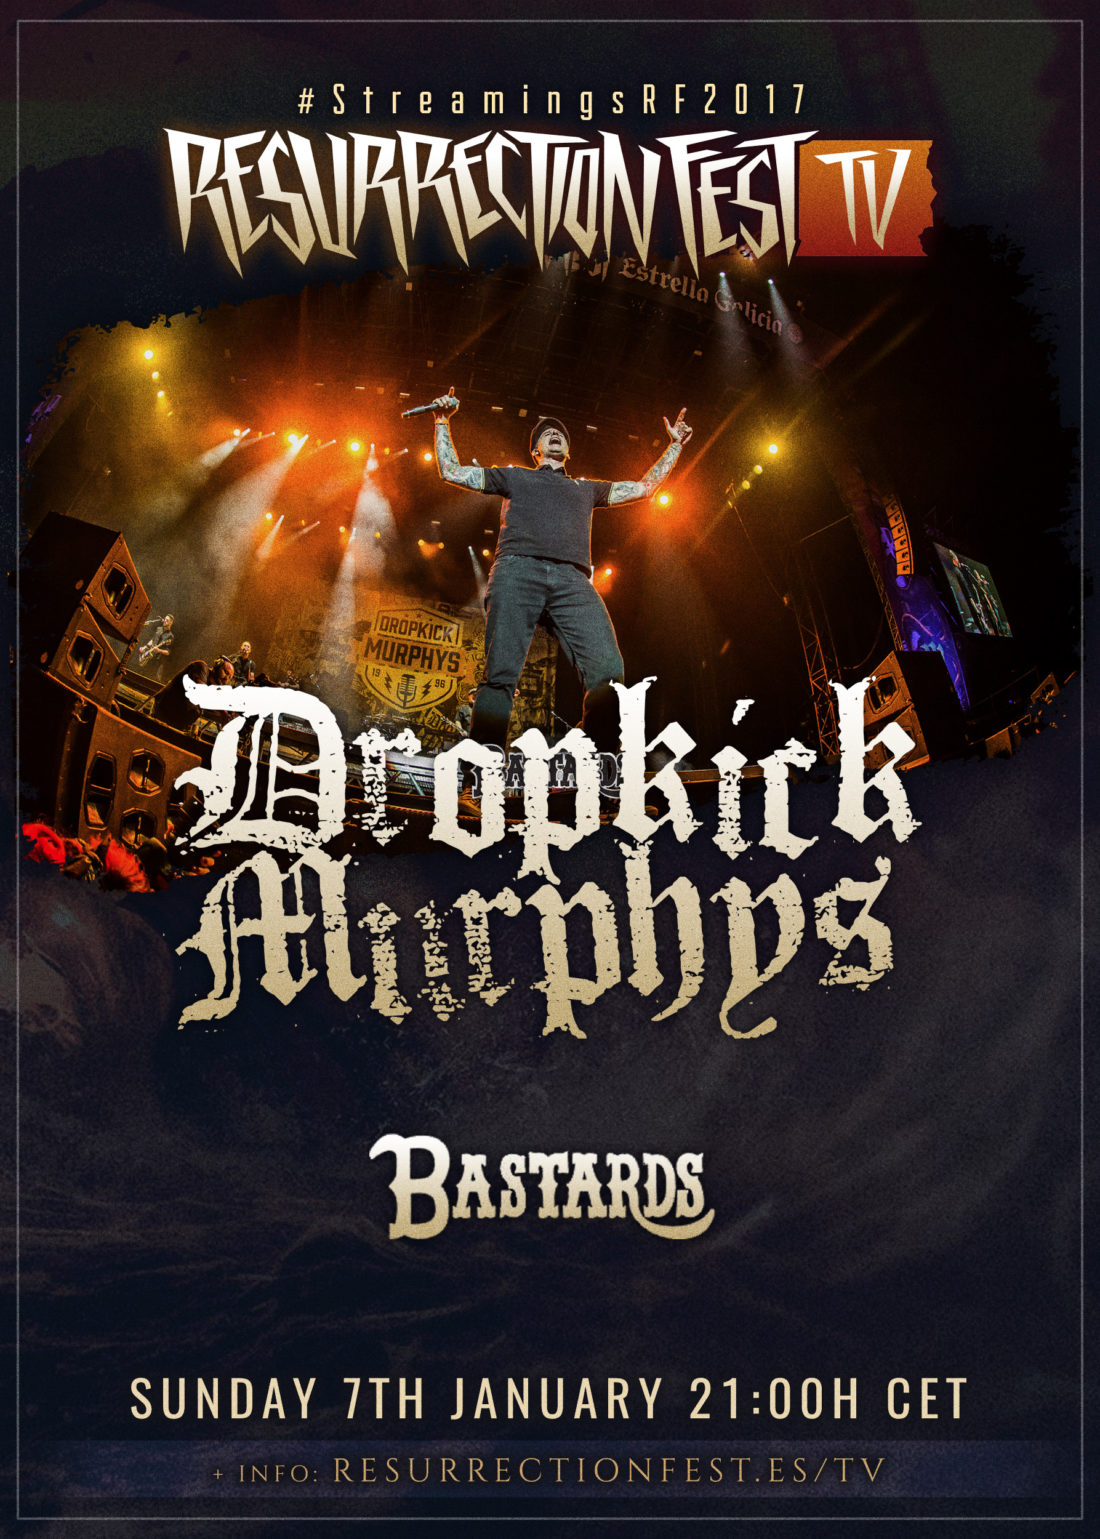 Nuevos conciertos en streaming en nuestra Resurrection Fest TV: Dropkick Murphys y Bastards